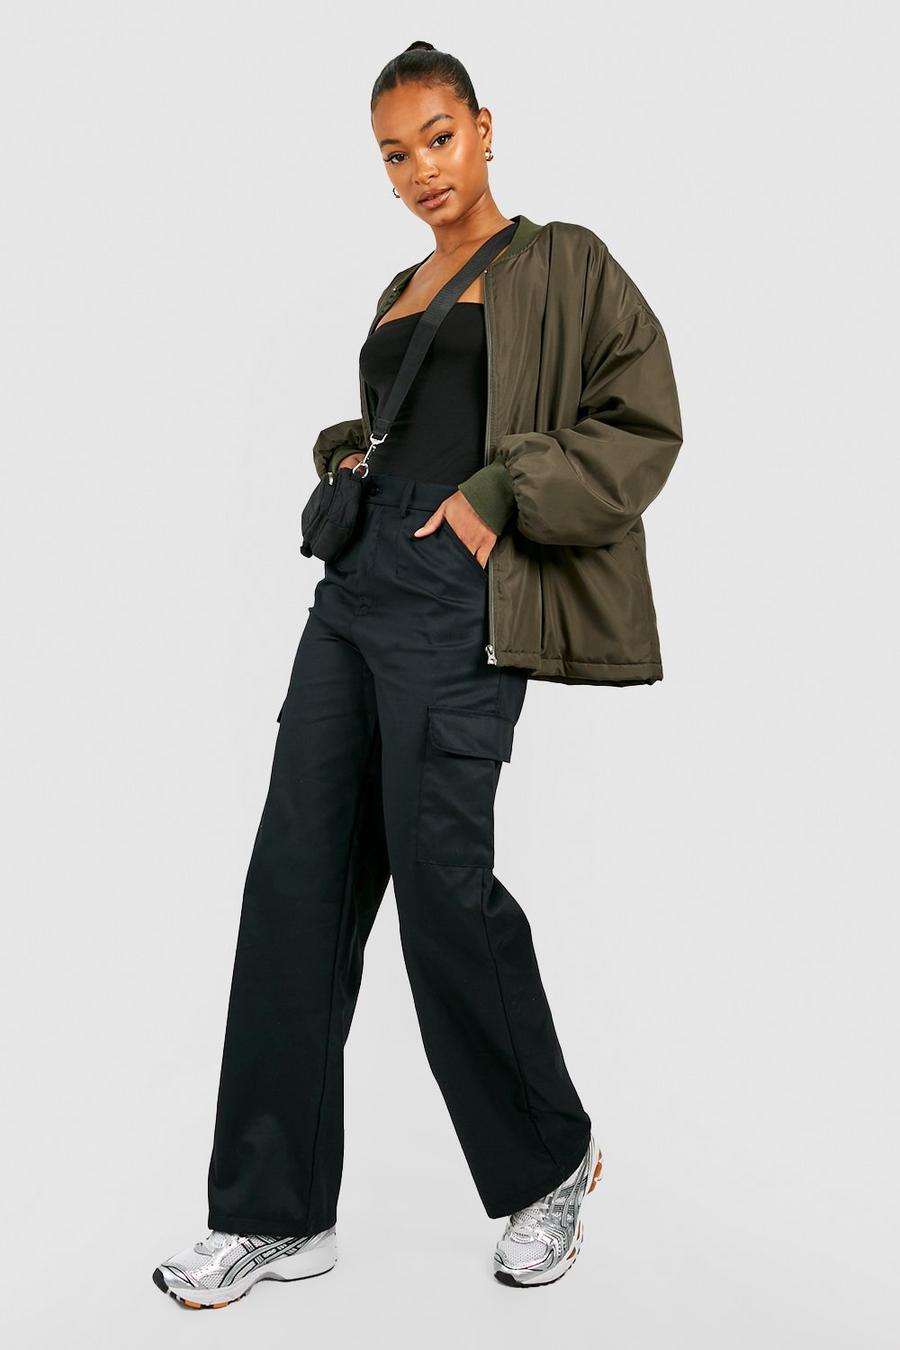 שחור מכנסי דגמ"ח בגזרה גבוהה וישרה, לנשים גבוהות image number 1